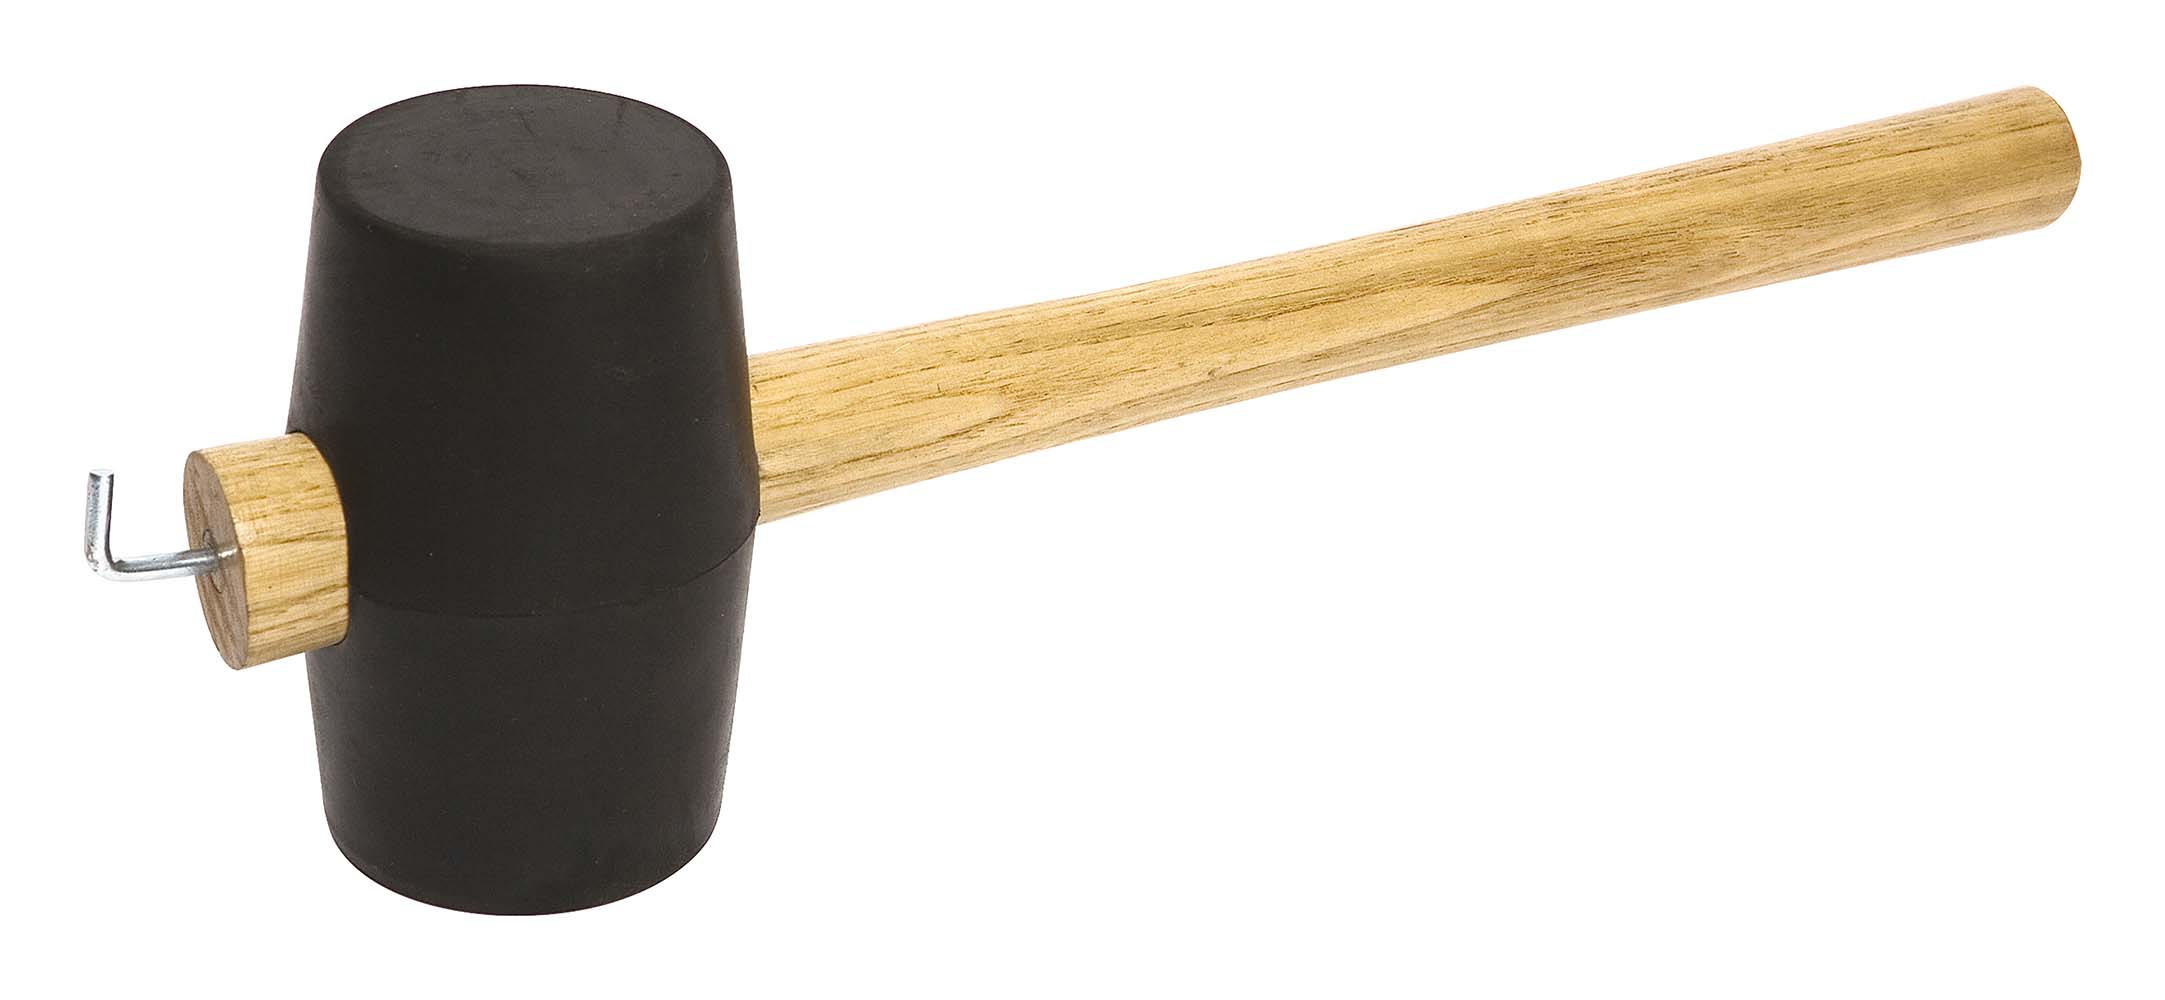 4114776 Un martillo de goma maciza. Equipado con un mango de madera con un fuerte carrete en el extremo.